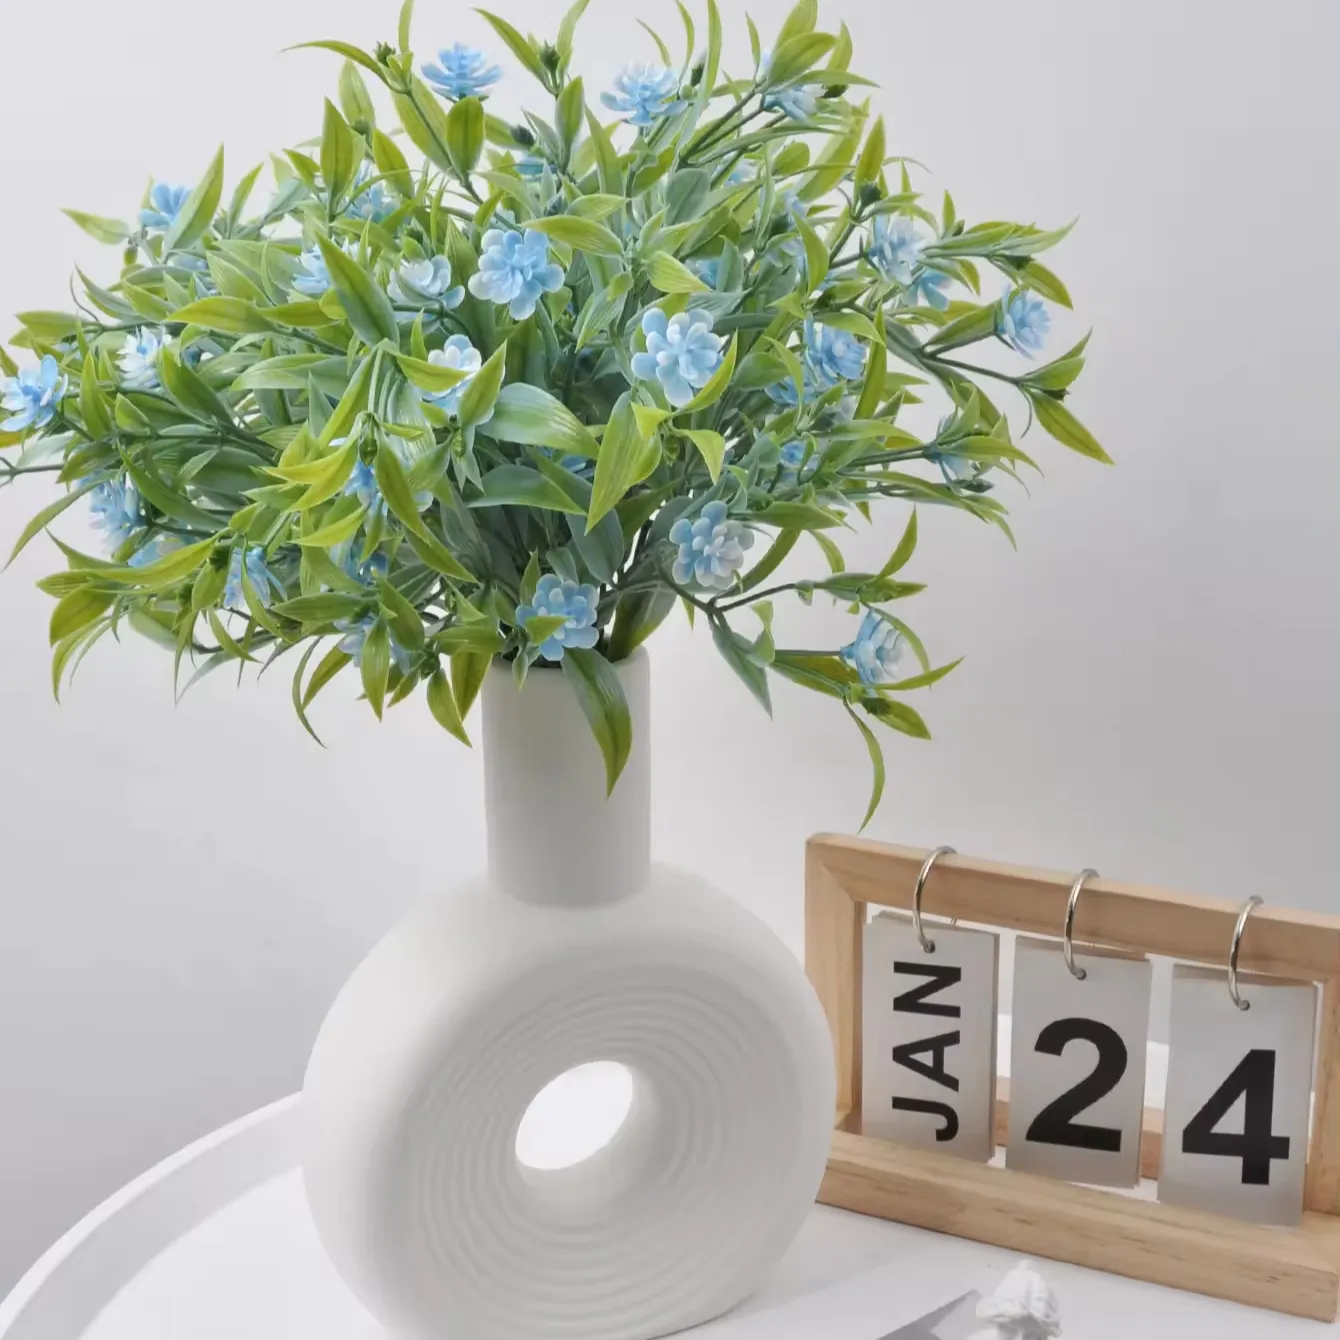 Artificial velvet tricolor water grass bouquet, outdoor wedding bouquet, plastic plant interior decoration